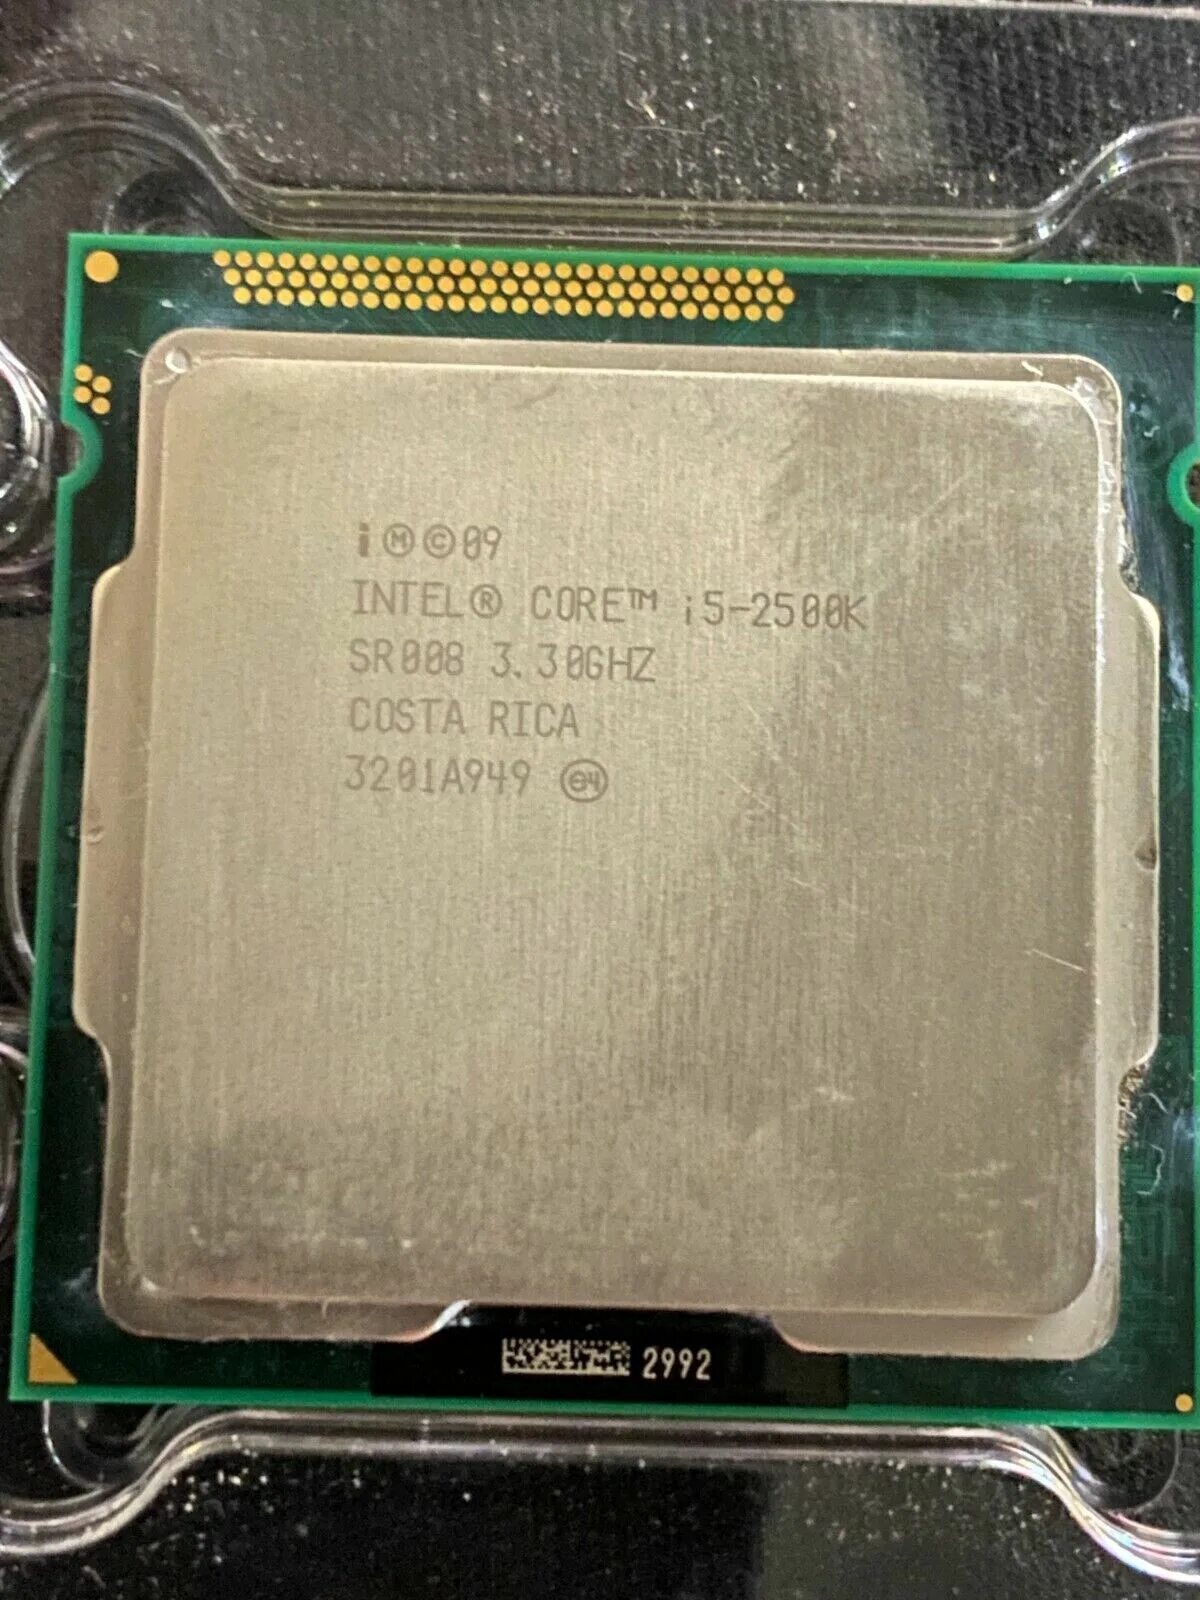 Интел 2500. Intel Core i5-2500k. Intel i5 2500 LGA 1155. Процессор Core i5-2500k. Процессор Intel Core i5 3.30 GHZ LGA 1155.